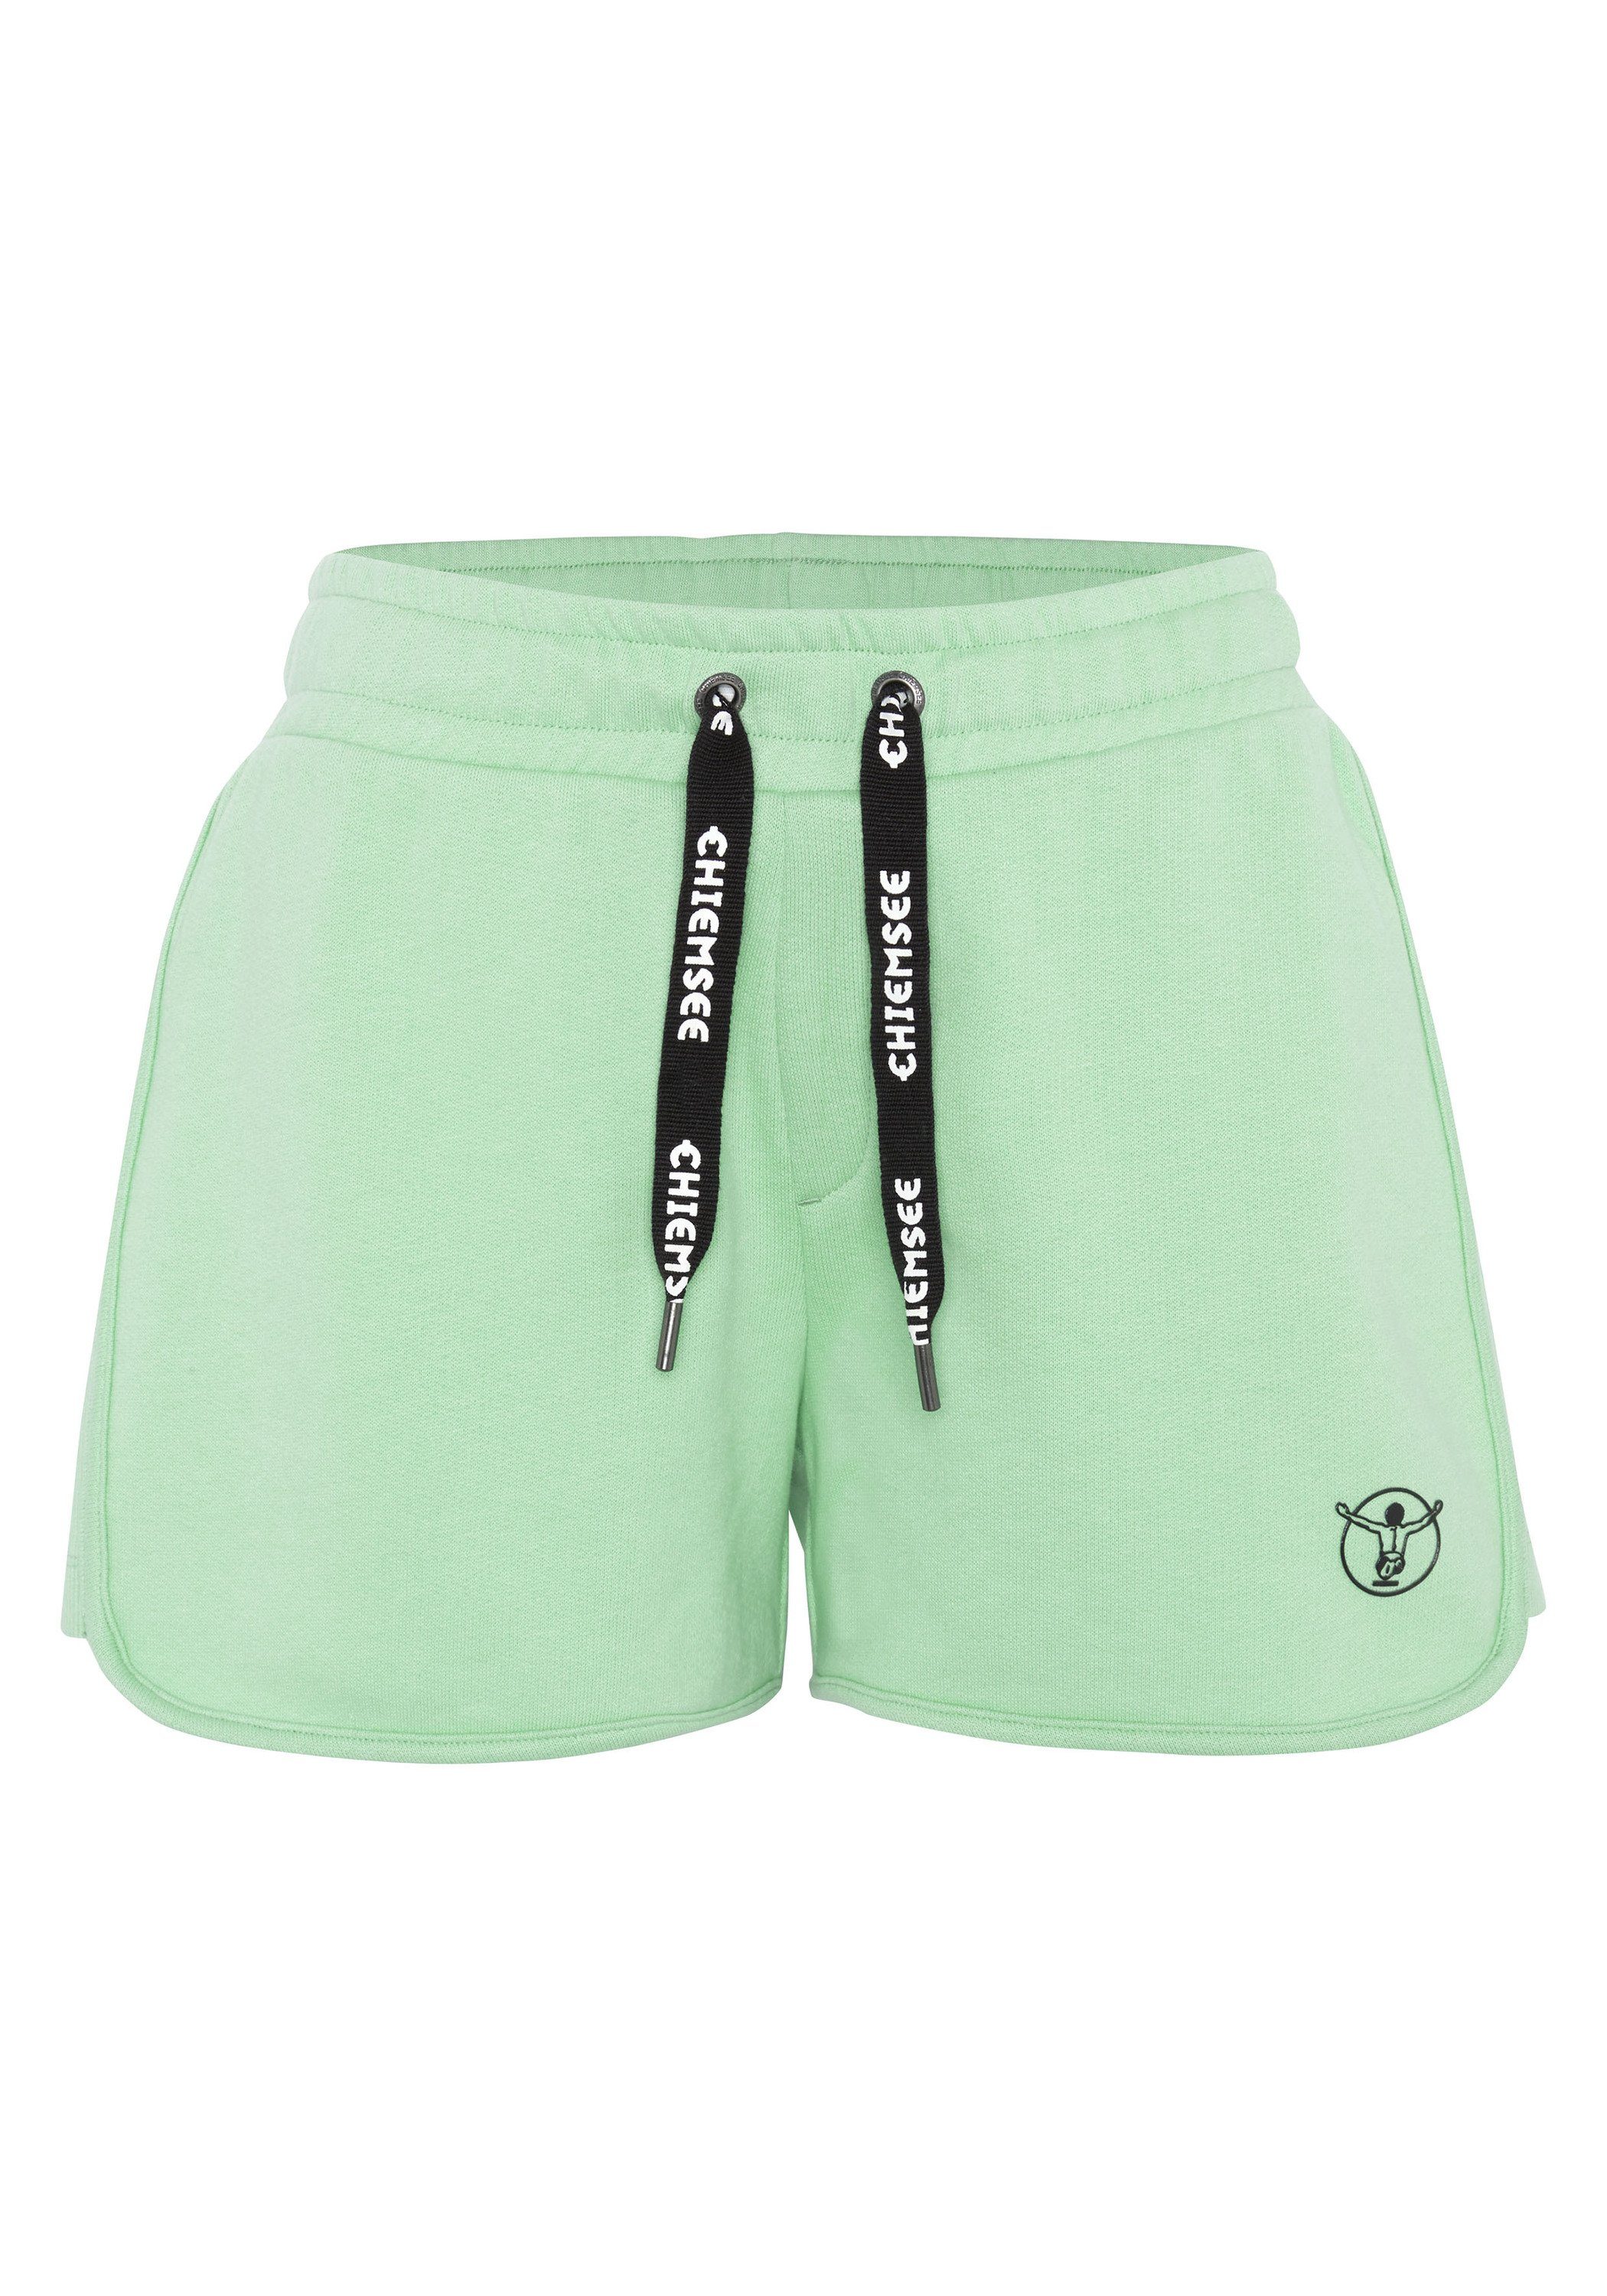 Chiemsee Sweatshorts Sweat-Shorts mit breitem Green Neptune Bund 1